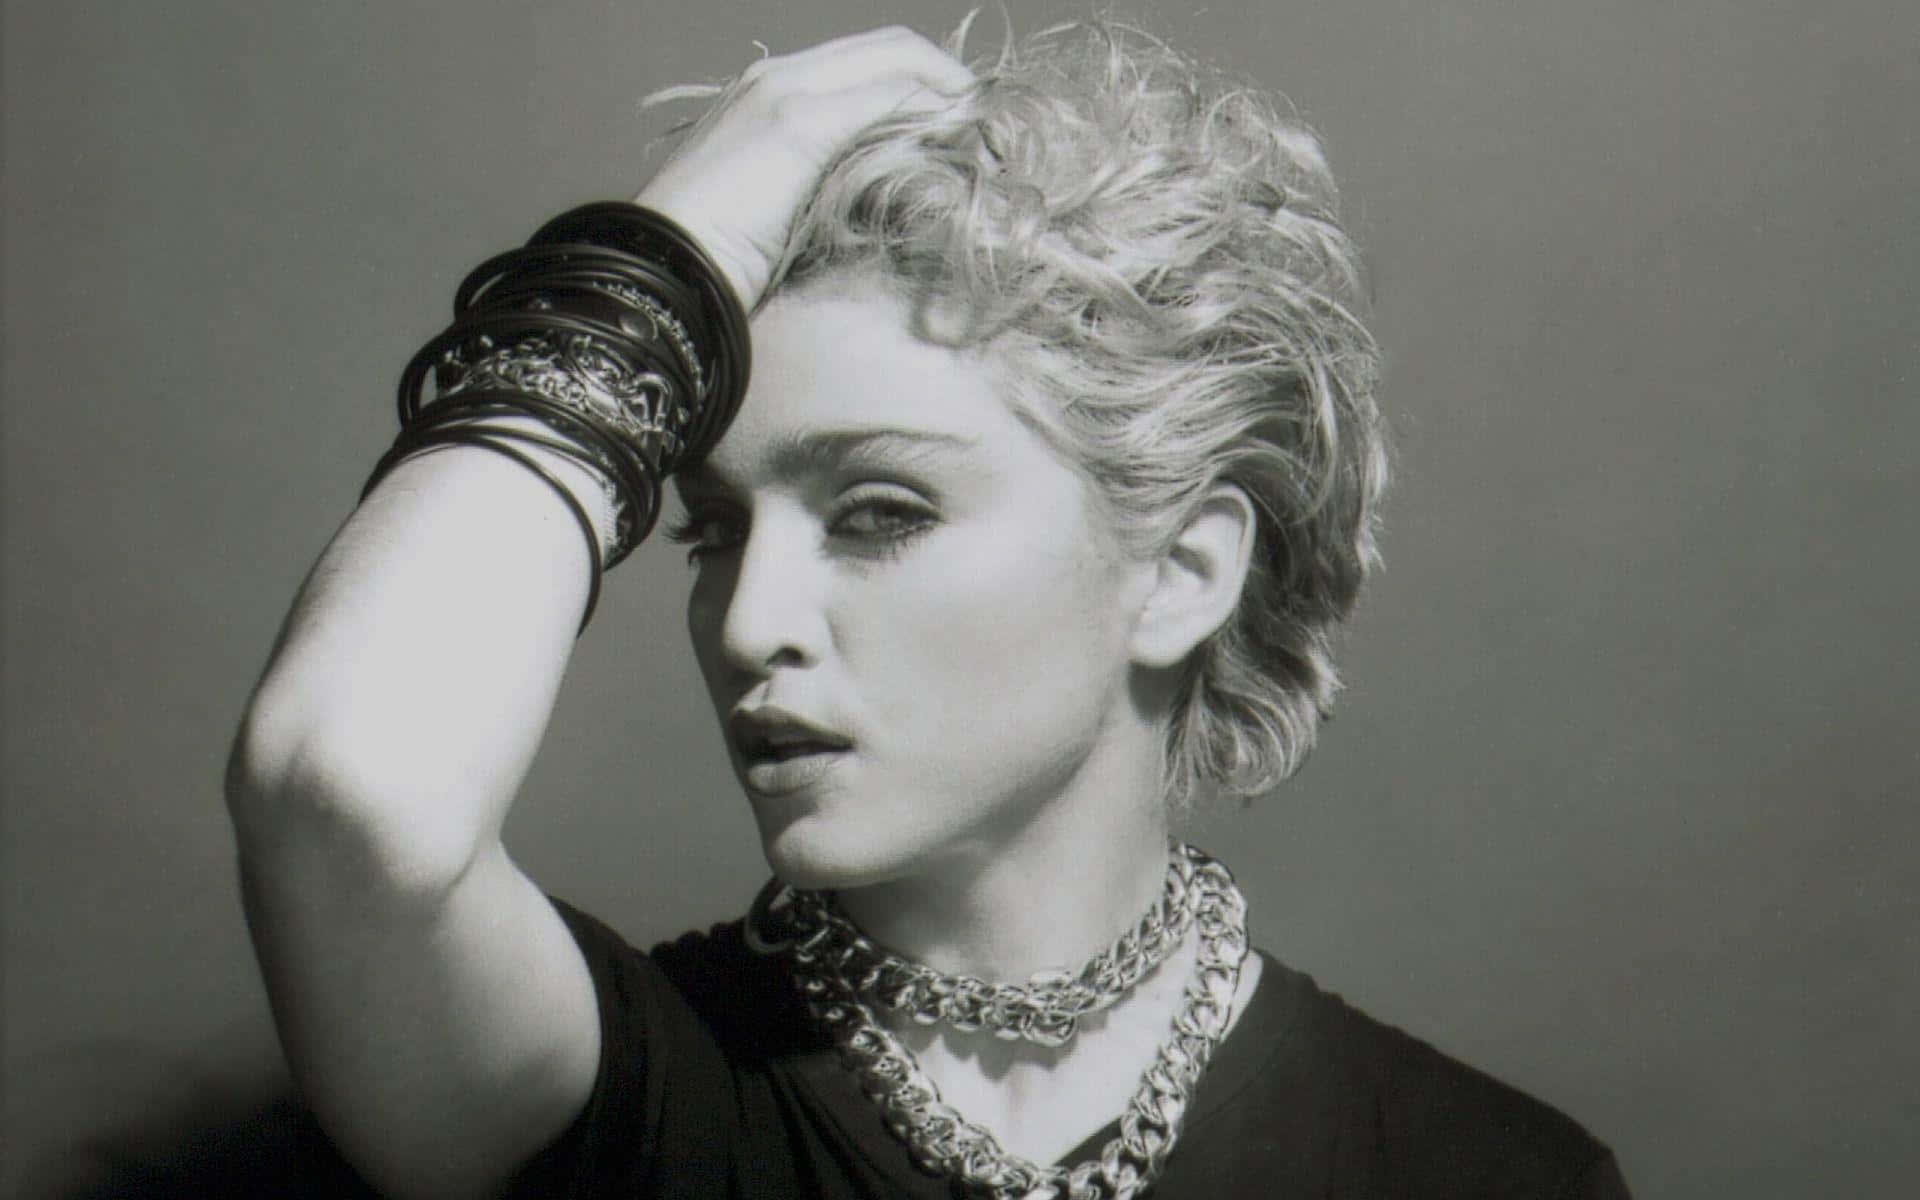 Madonnasynger På Scenen Under Rebel Heart Tour.